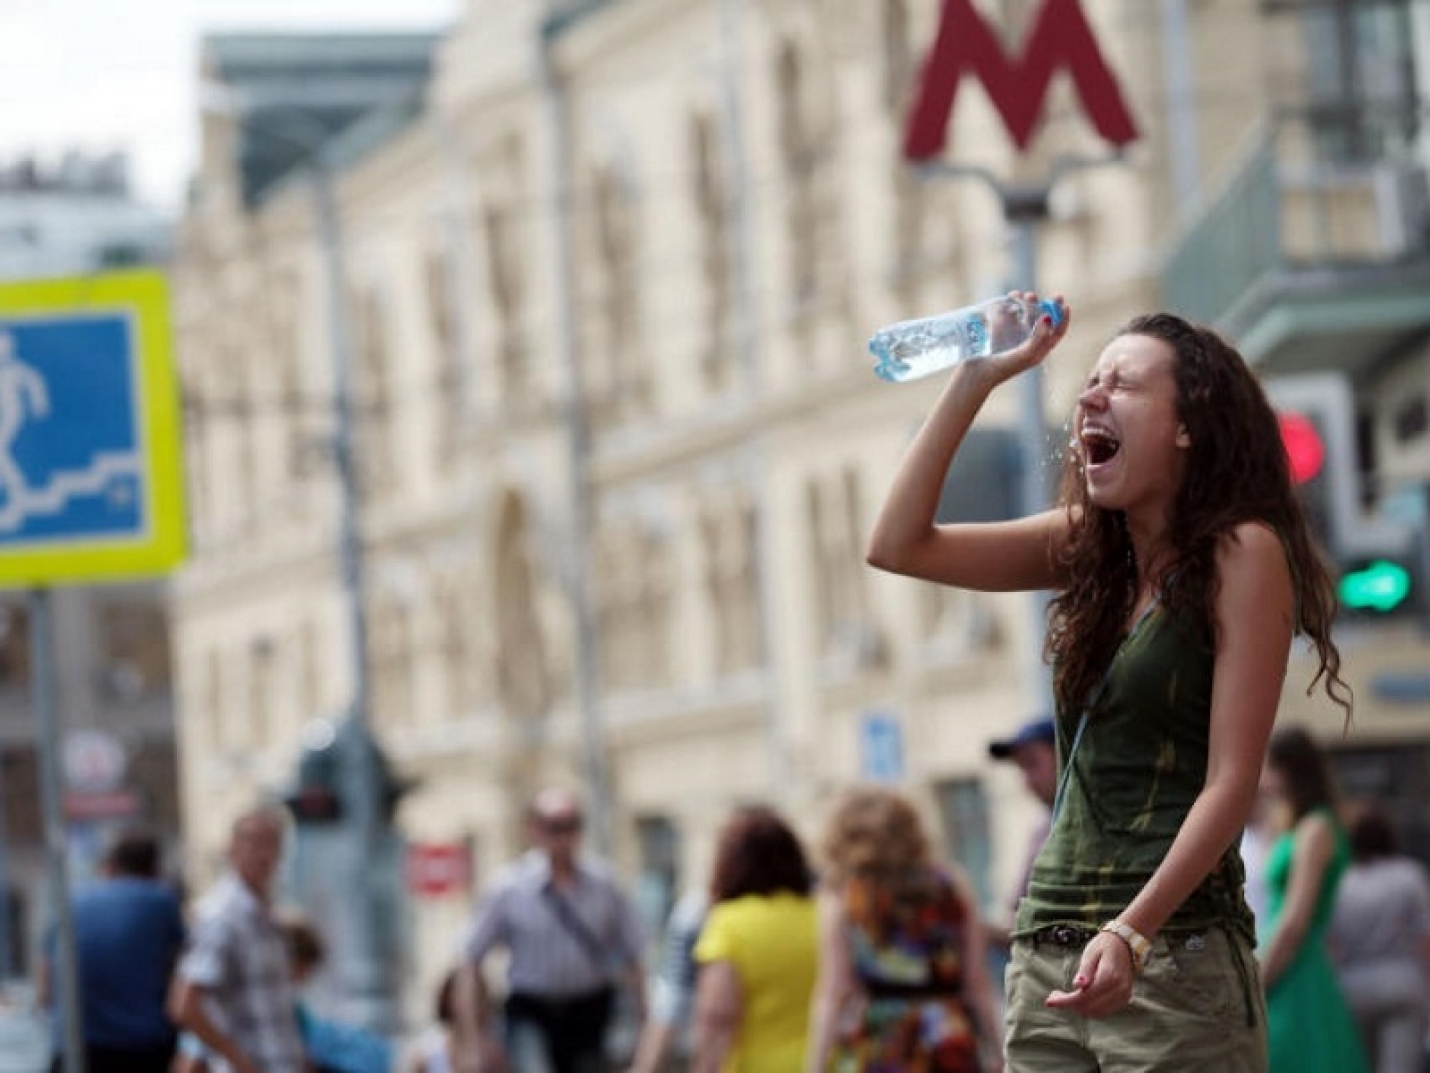 Москвичей предупредили об экстремальной жаре летом